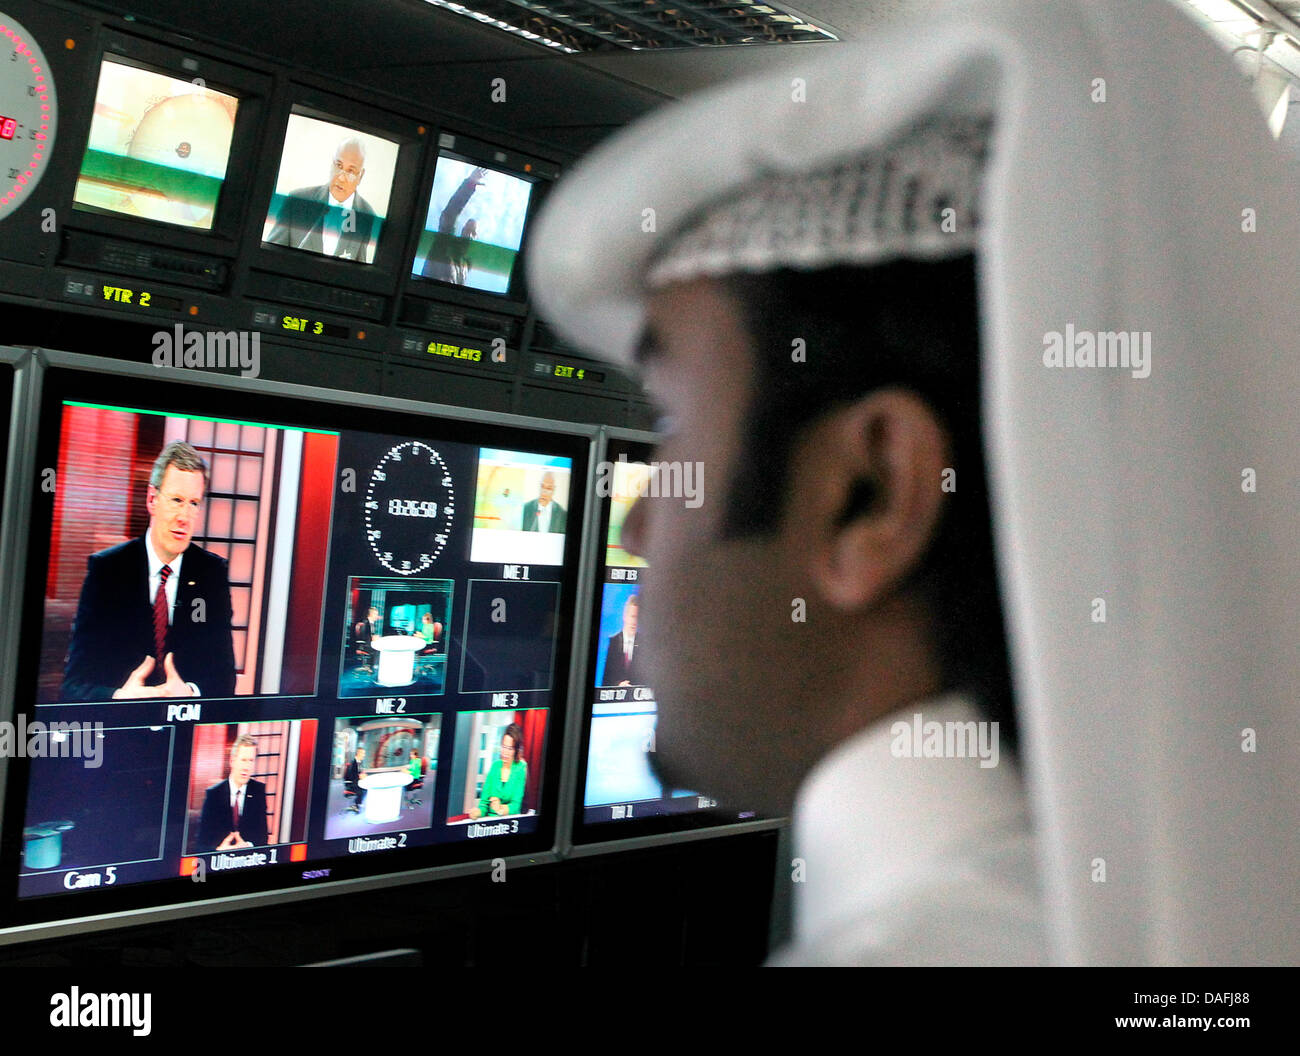 Bundespräsident Christian Wulff besucht am Montag (28.02.2011) in Doha in Katar den arabischen Fernsehsender Al Dschasira und gibt ein Fernsehinterview, wobei er auf einem Bildschirm zu sehen ist (l). Das deutsche Staatsoberhaupt hält sich zu einem dreitägigen Besuch in den Golfstaaten Kuwait und Katar auf. Foto: Wolfgang Kumm dpa Stock Photo